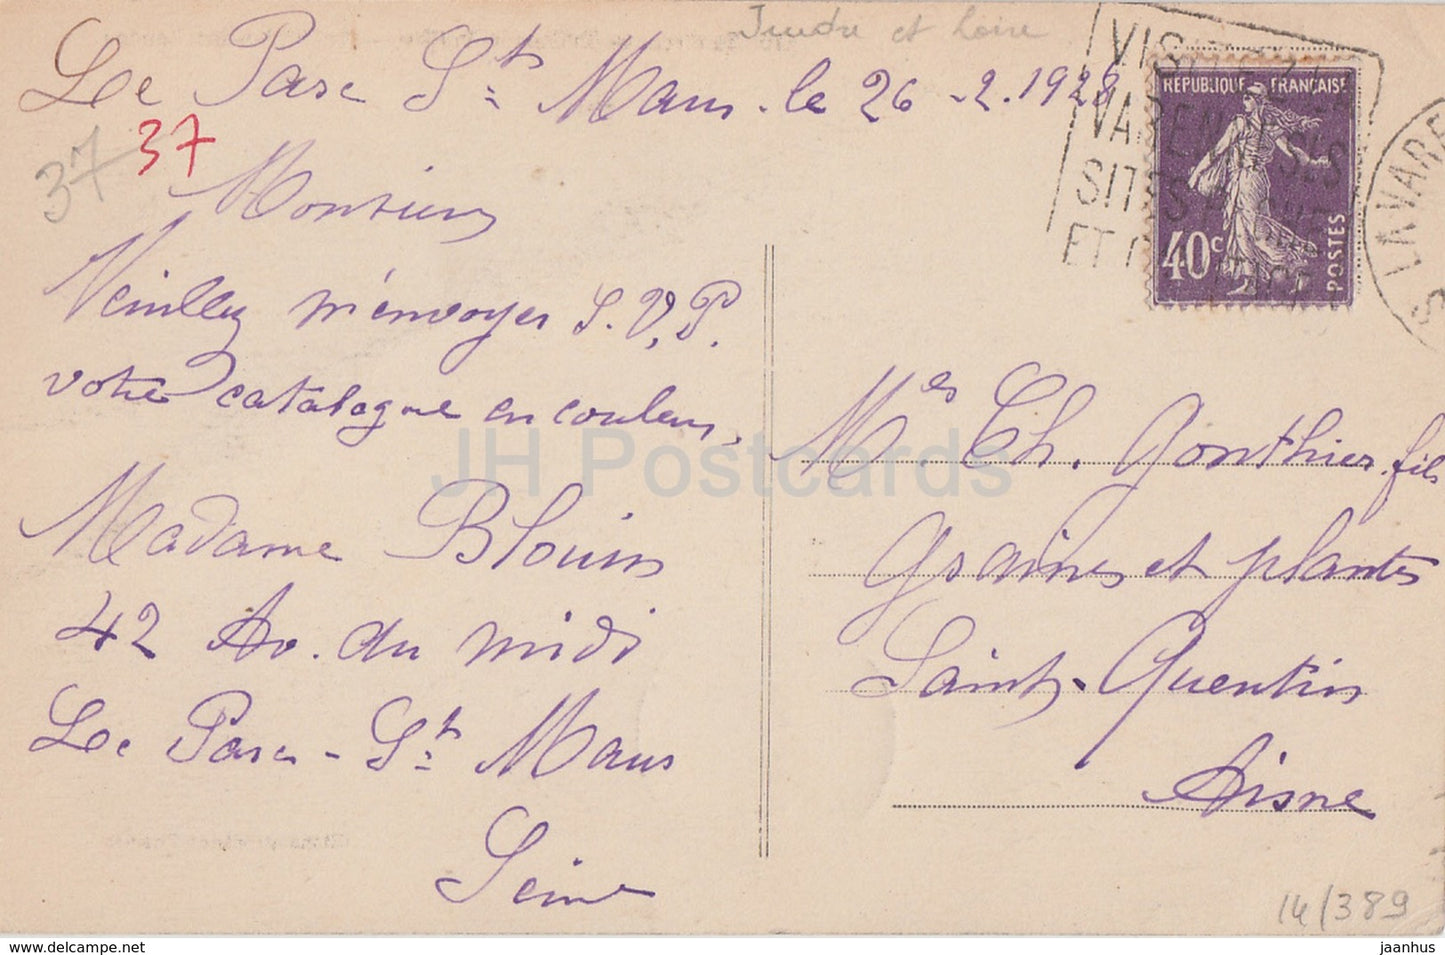 Environs de Chateau la Valliere - Le Vivier des Landes - castle - 115 - old postcard - 1928 - France - used